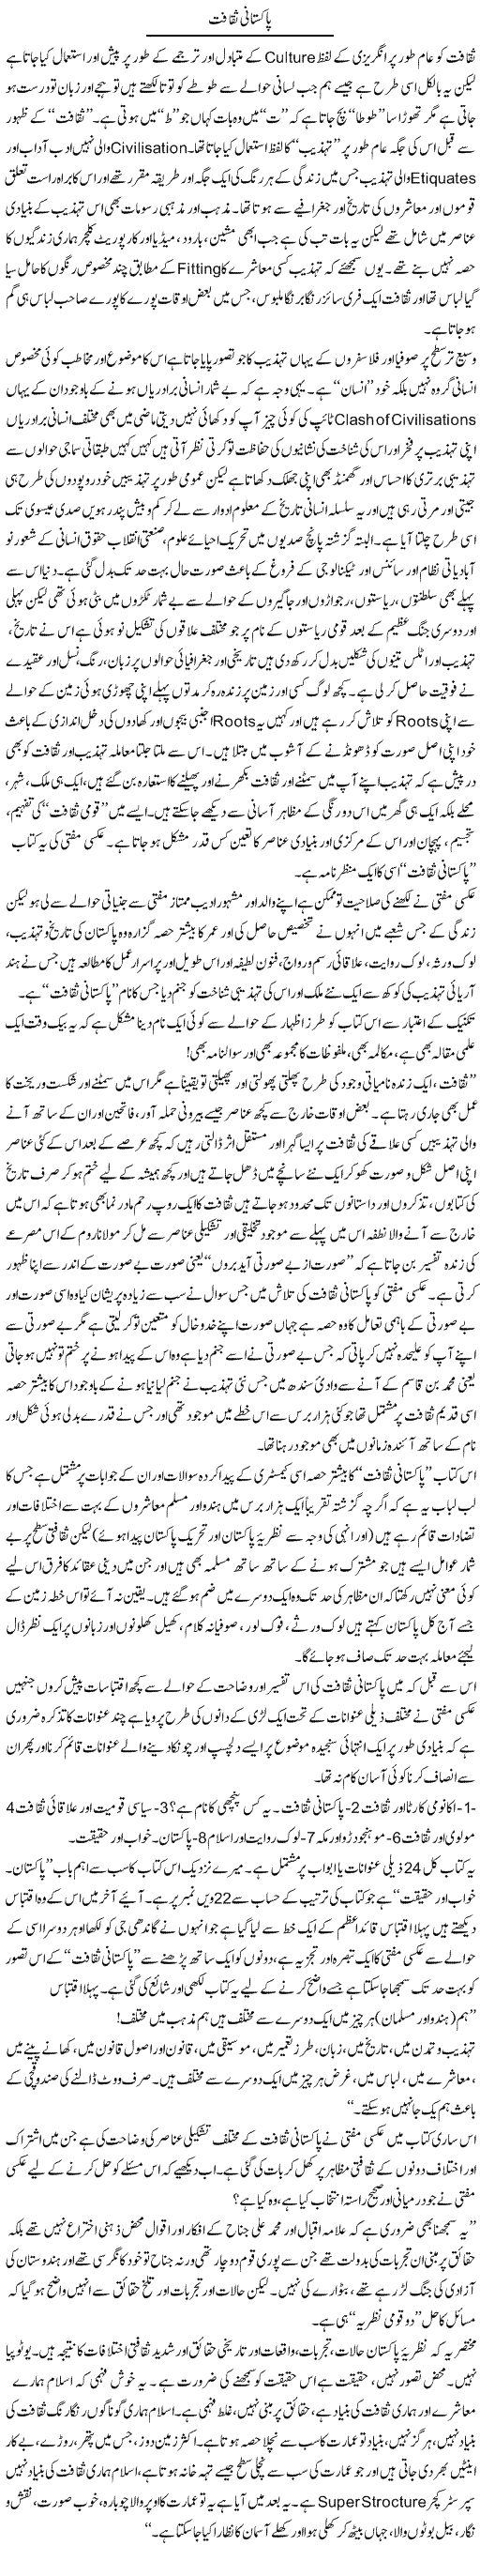 Pakistani Saqafat | Amjad Islam Amjad | Daily Urdu Columns